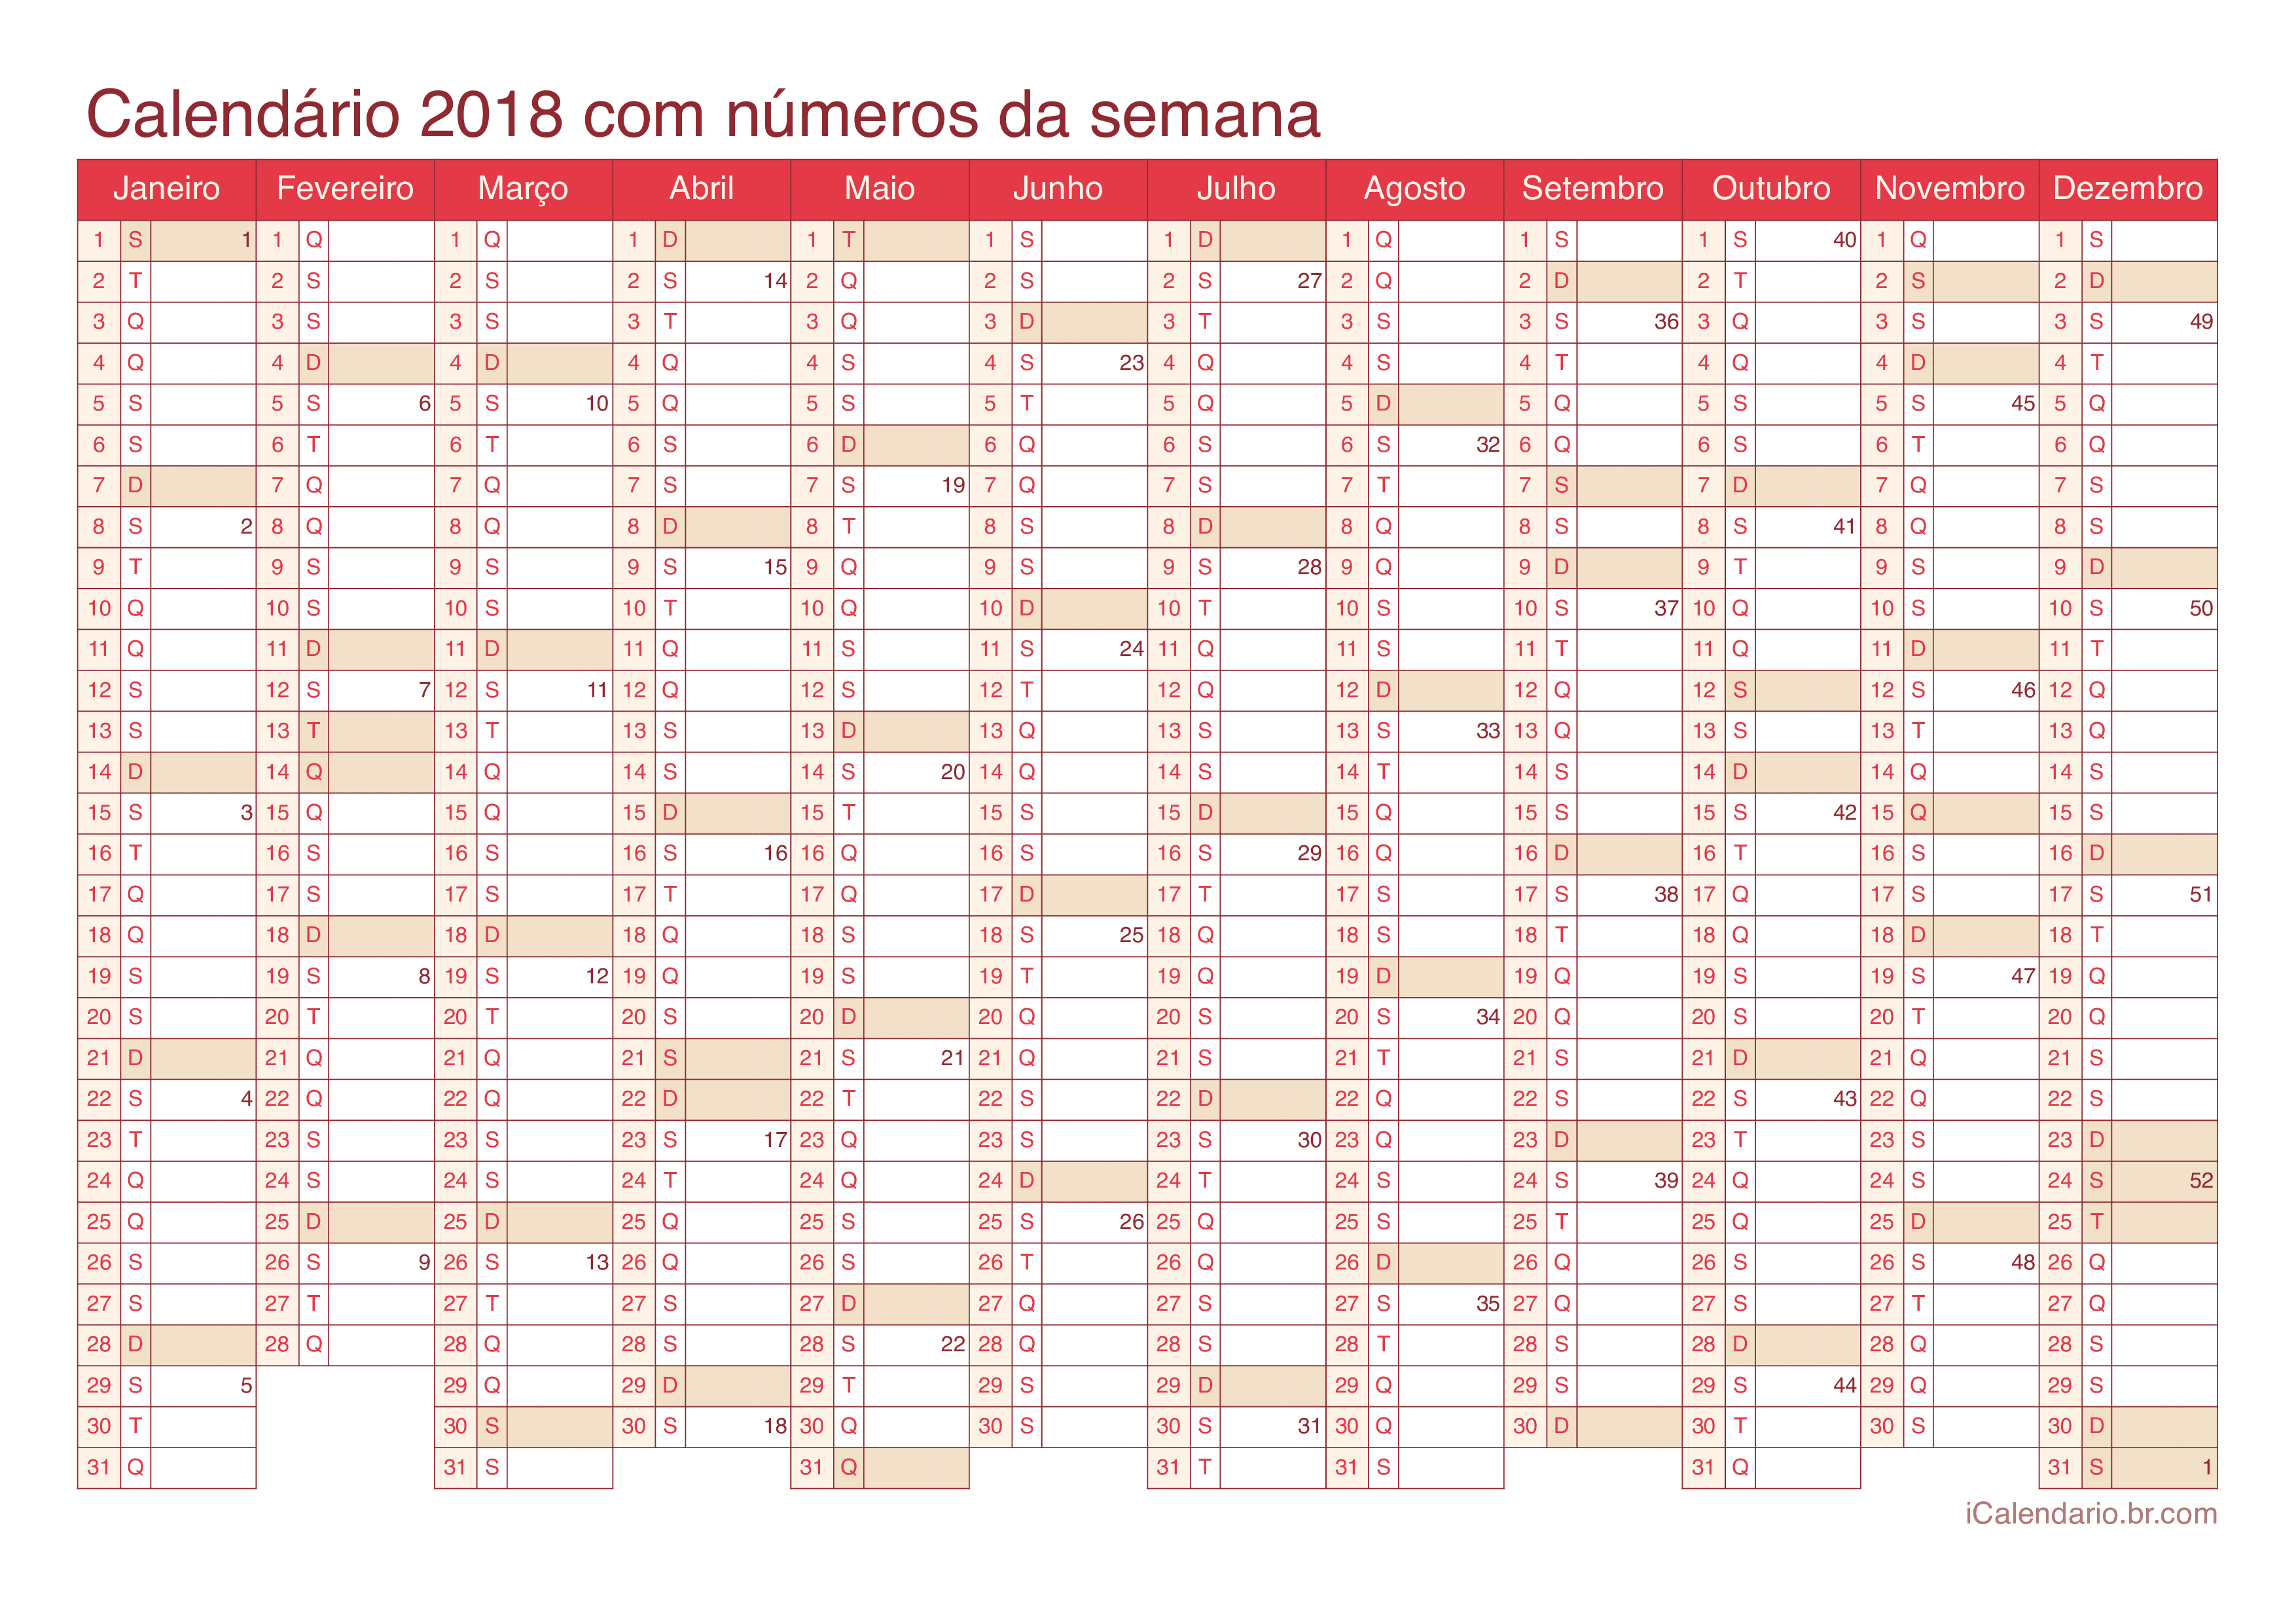 Calendário 2018 com números da semana - Cherry